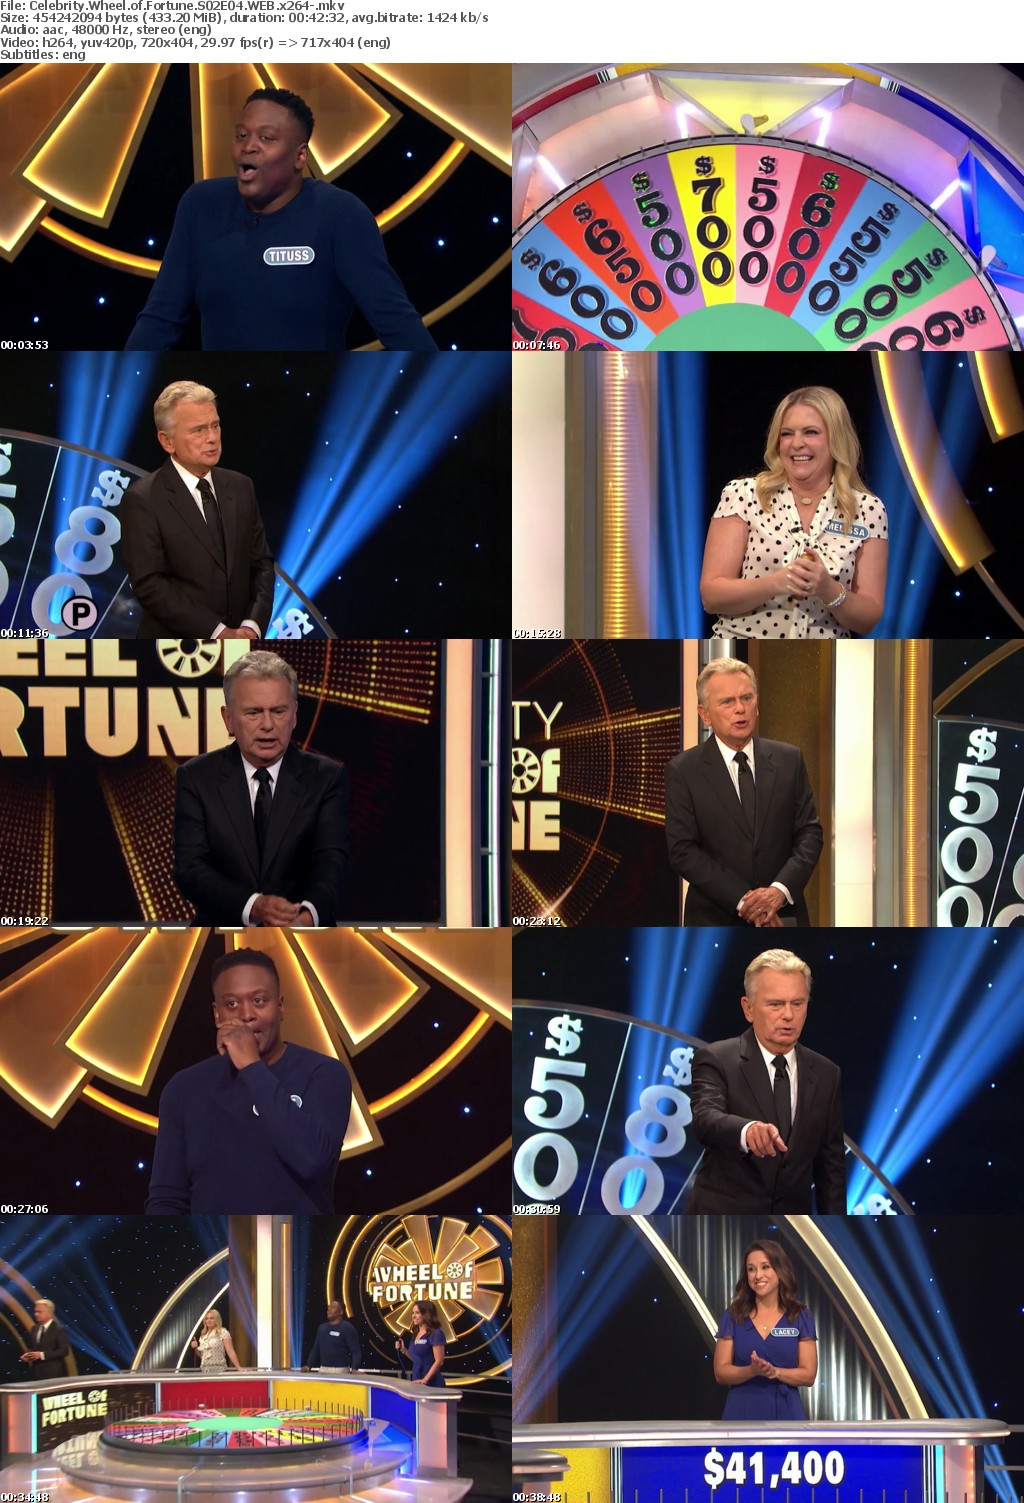 Celebrity Wheel of Fortune S02E04 WEB x264-